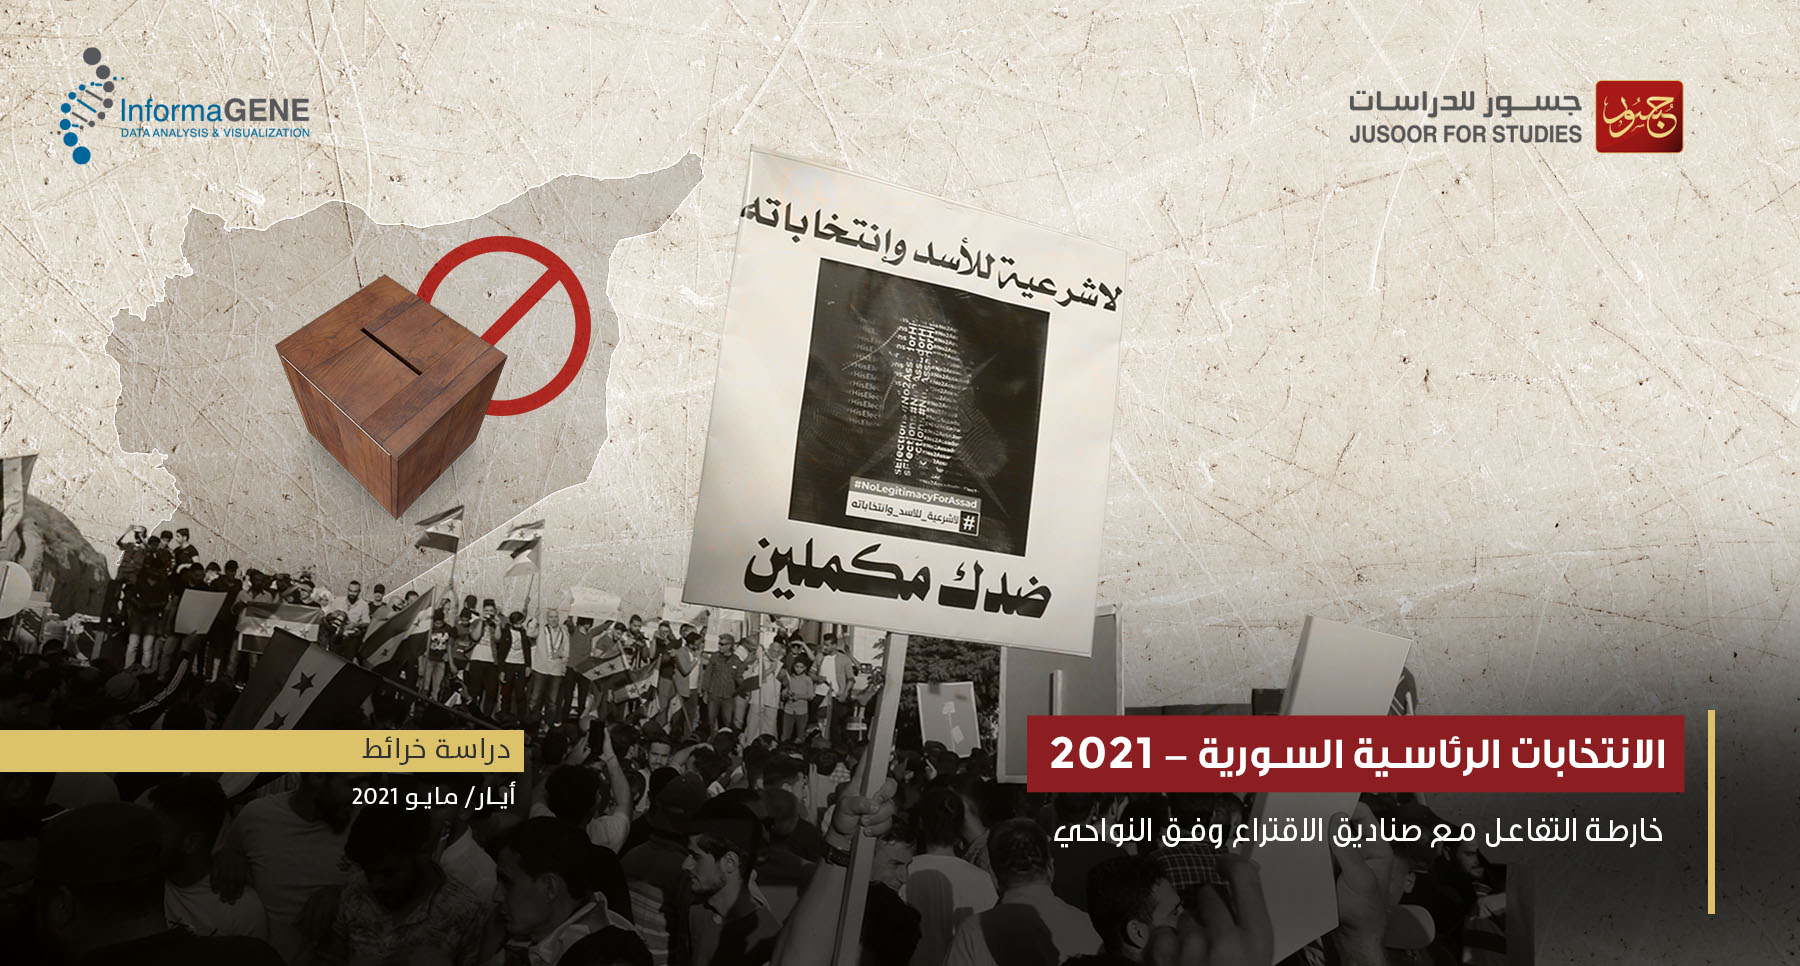 الانتخابات الرئاسية السورية 2021 : خارطة التفاعل مع صناديق الاقتراع وفق النواحي